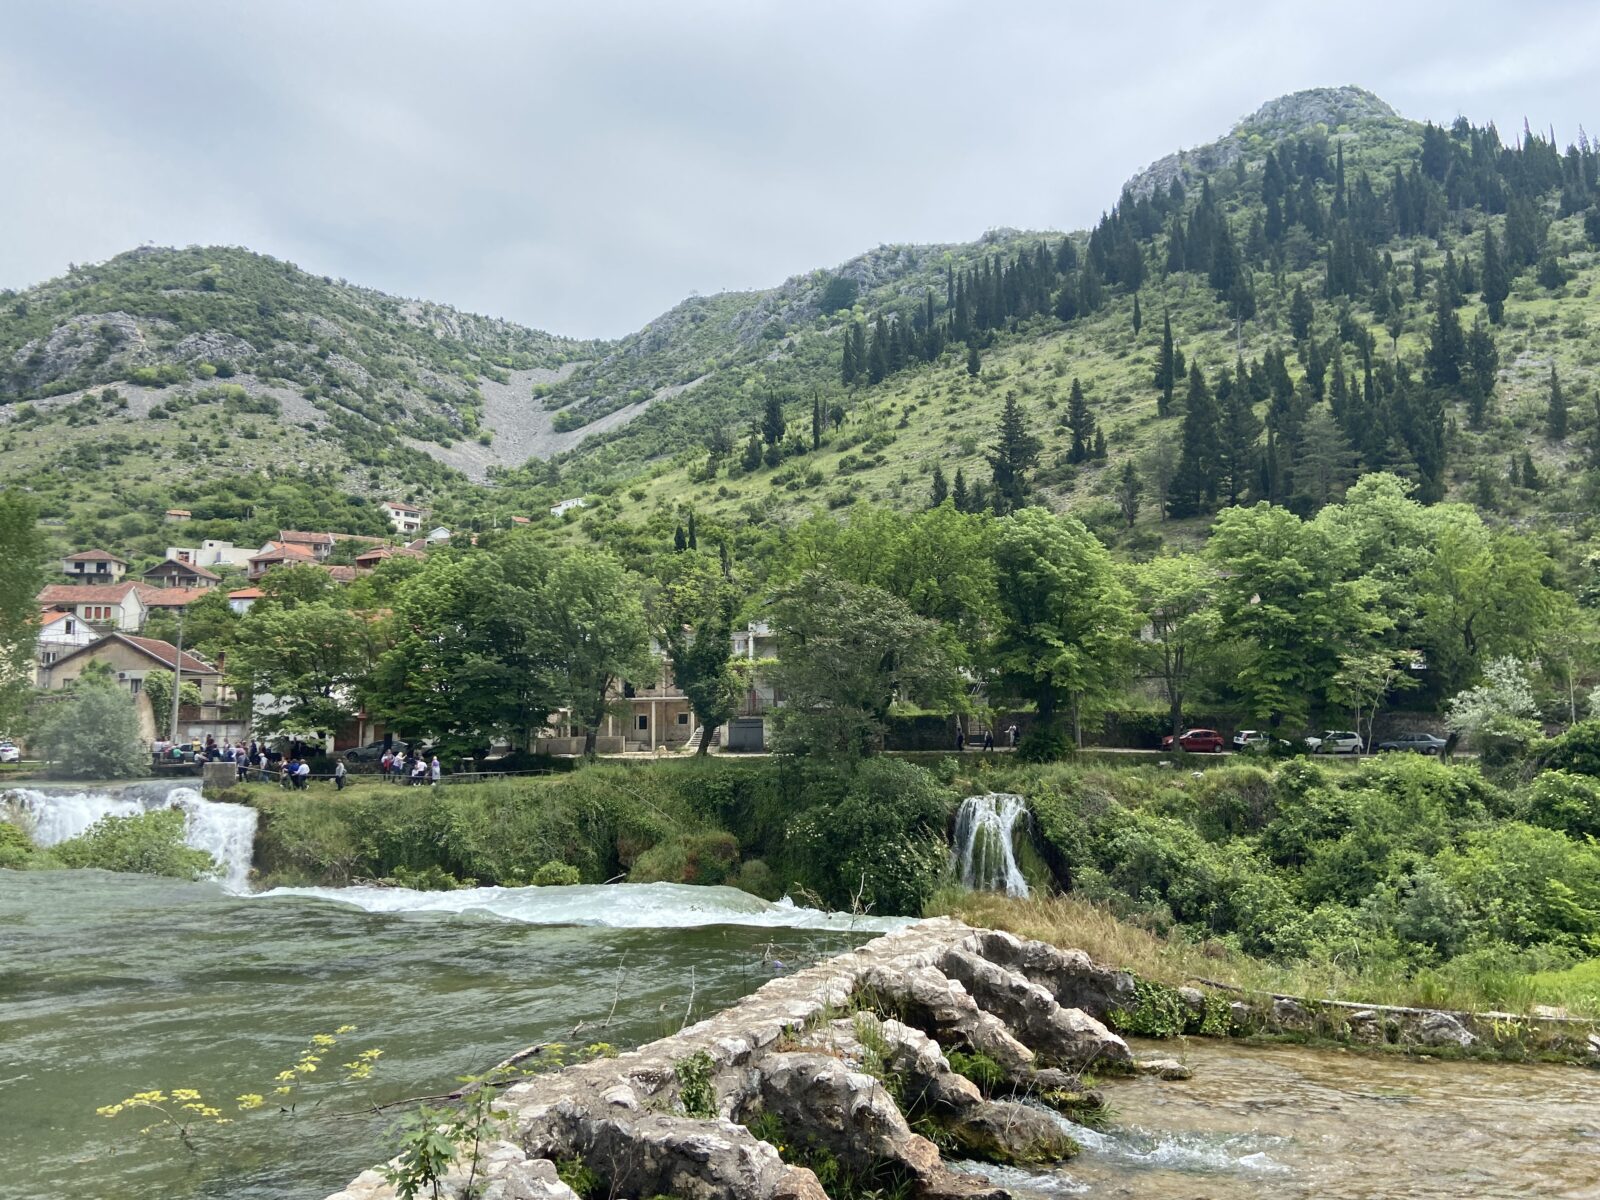 Bus-Abenteuer: Fahrt durch Bosnien-Herzegowina und Montenegro